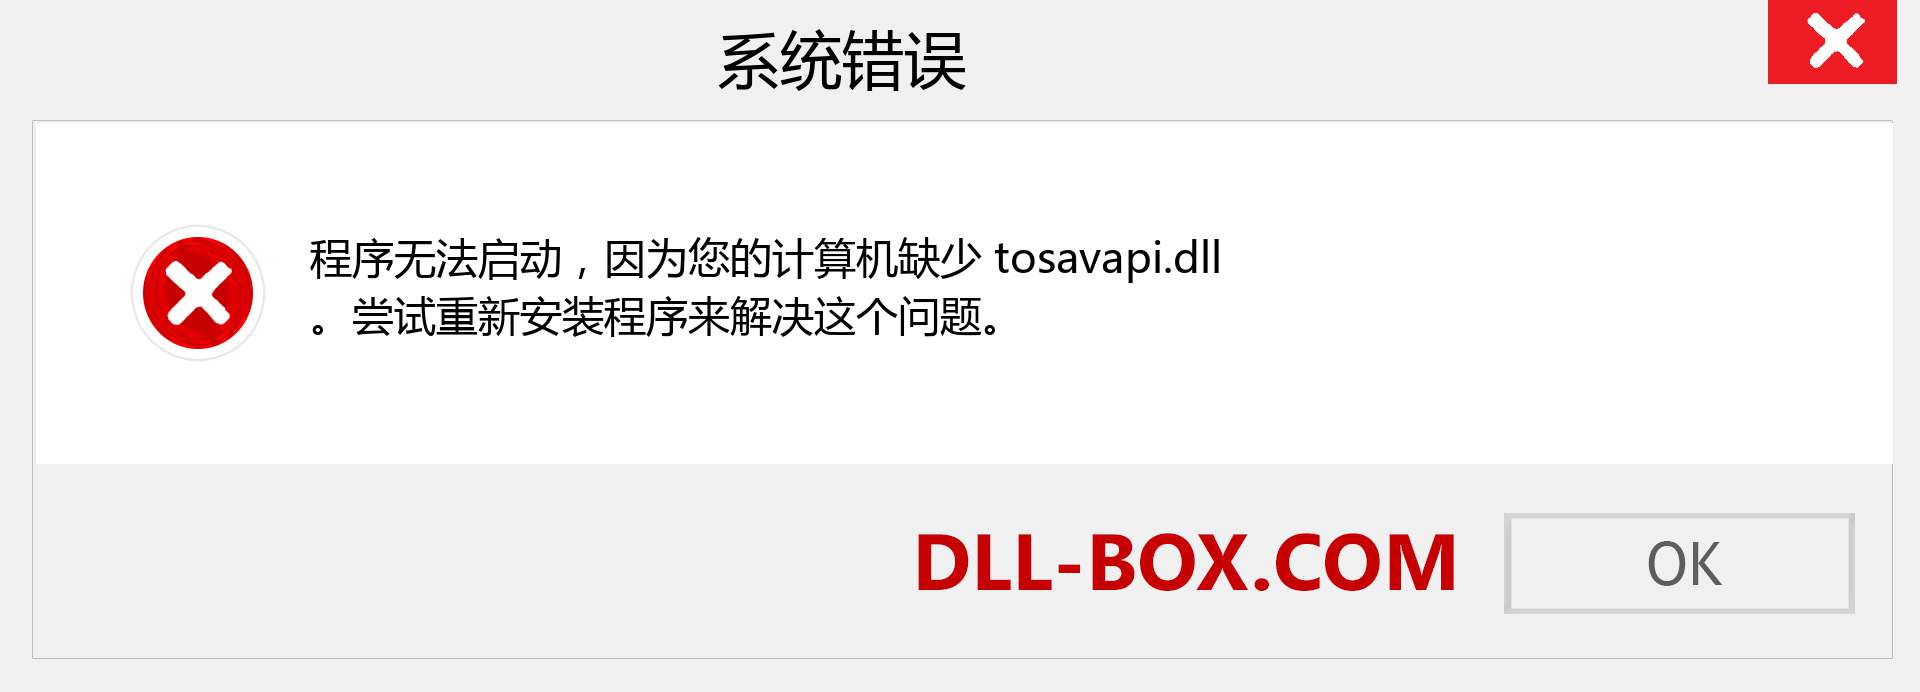 tosavapi.dll 文件丢失？。 适用于 Windows 7、8、10 的下载 - 修复 Windows、照片、图像上的 tosavapi dll 丢失错误